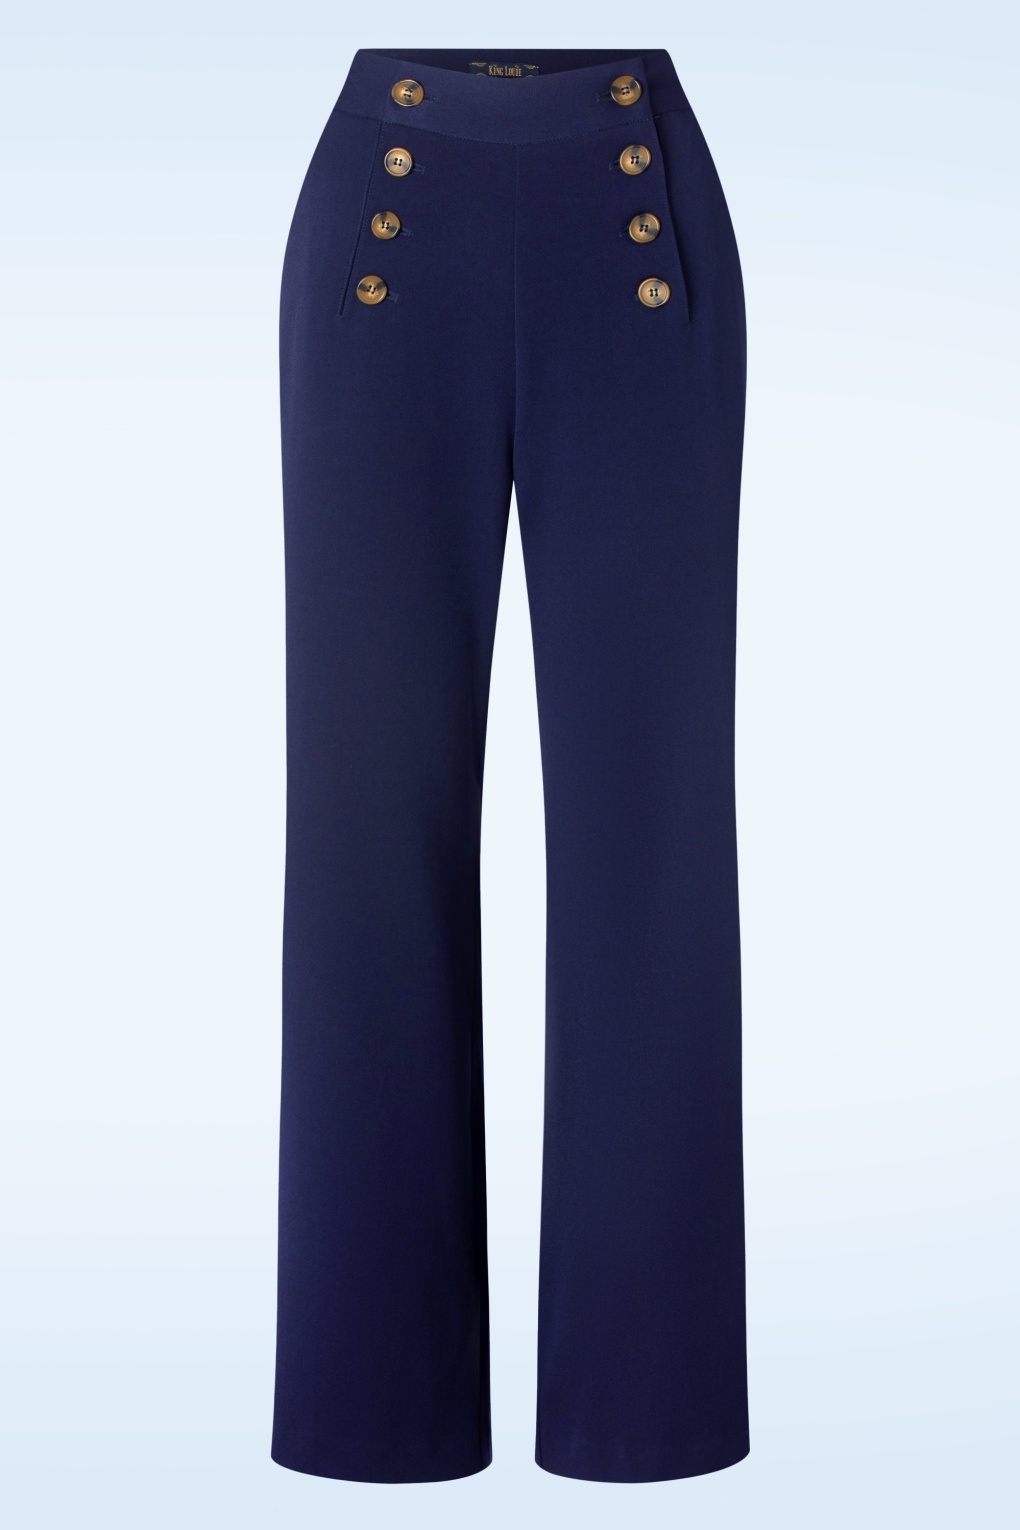 pantalon sally broadway en bleu encre